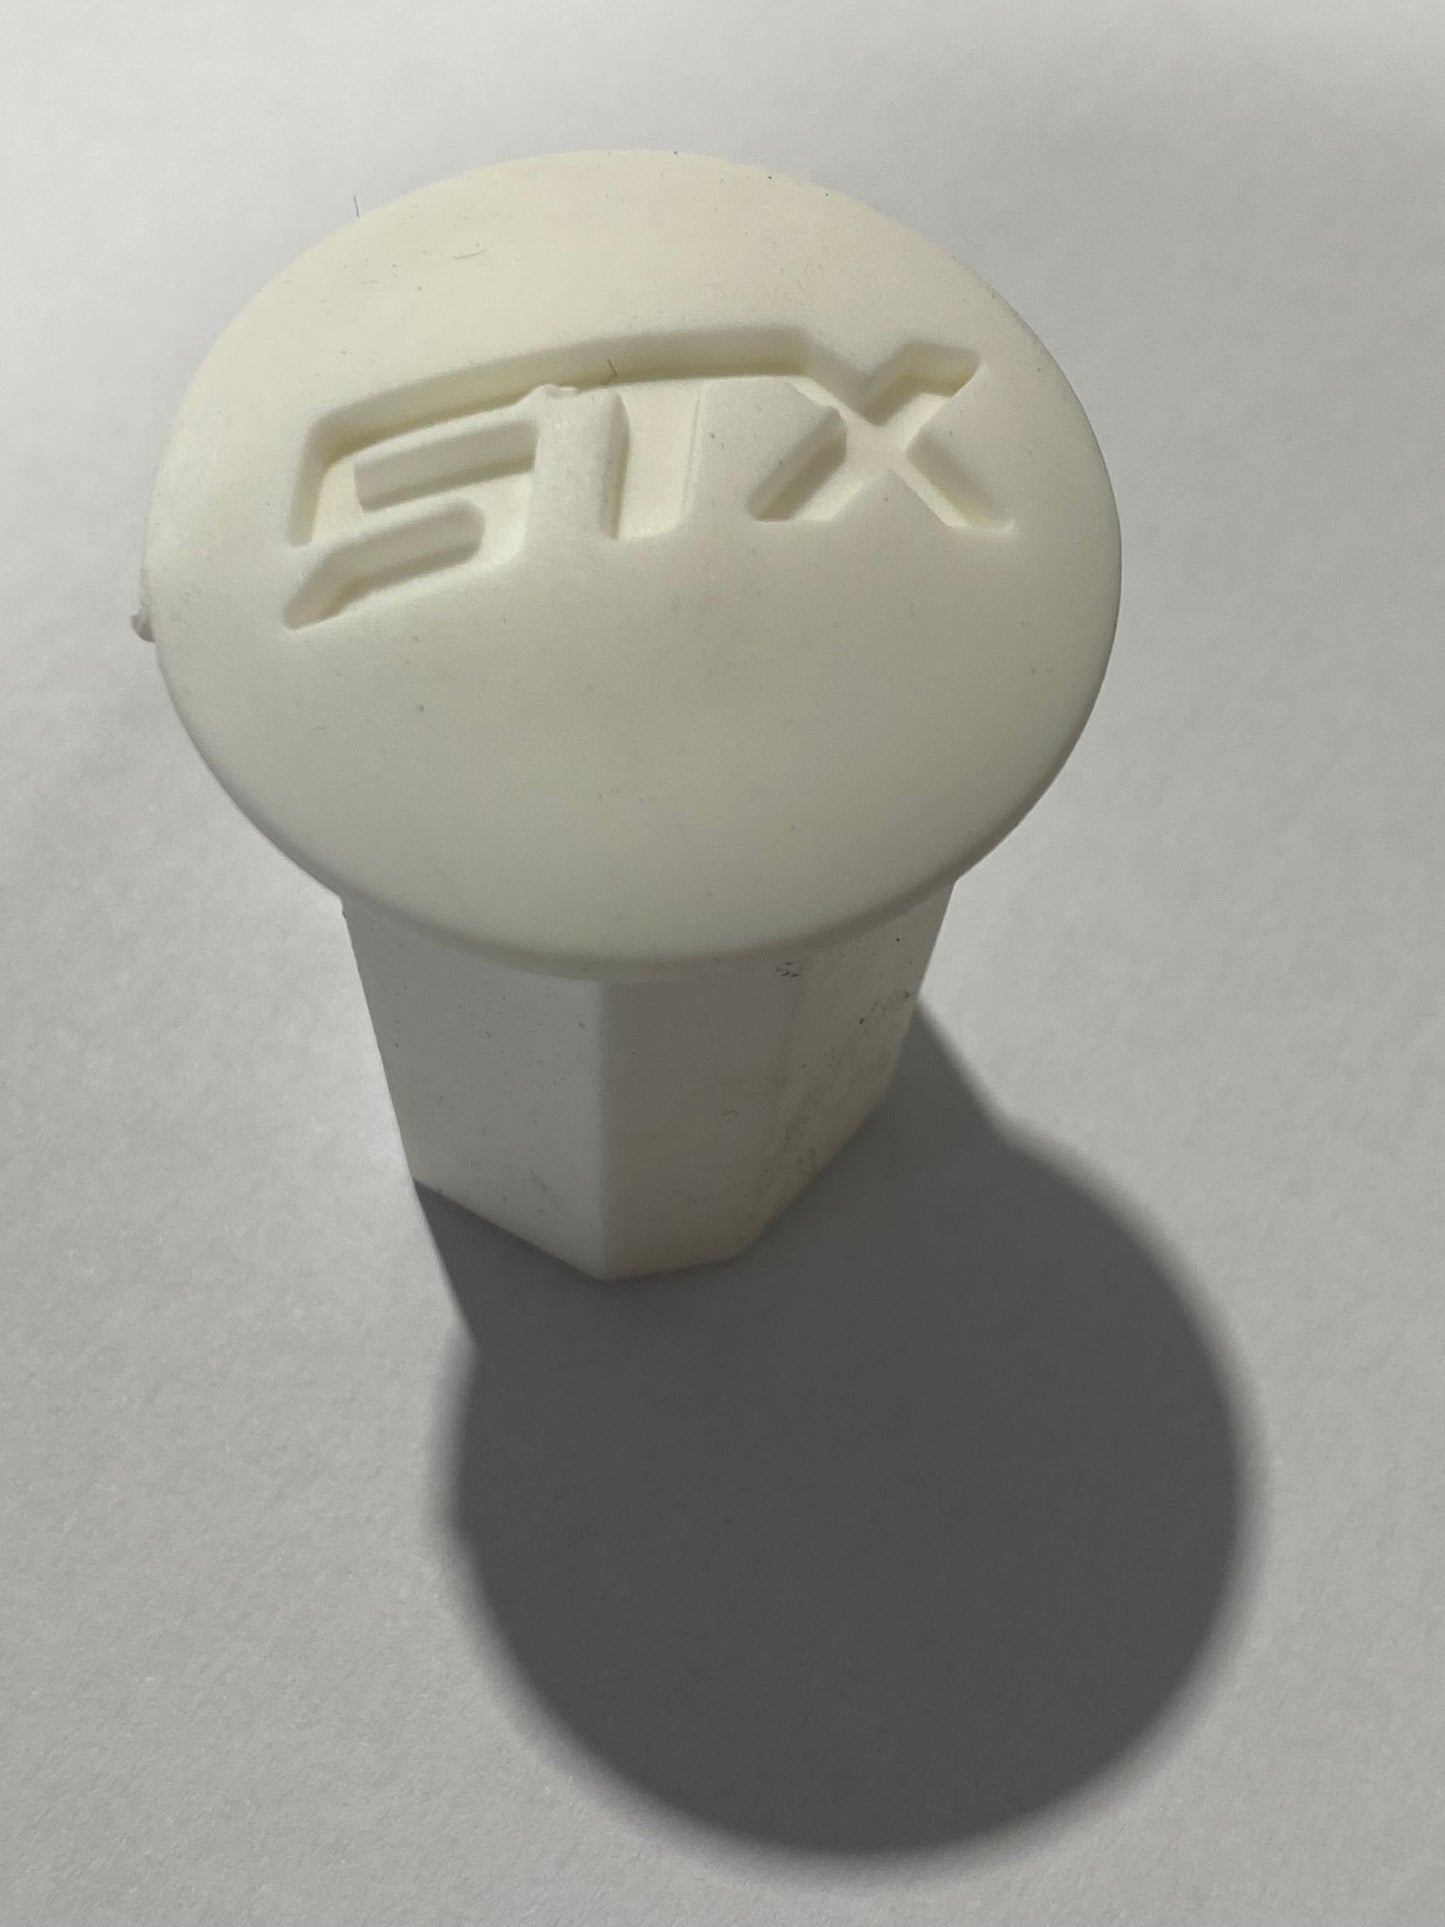 STX End Caps